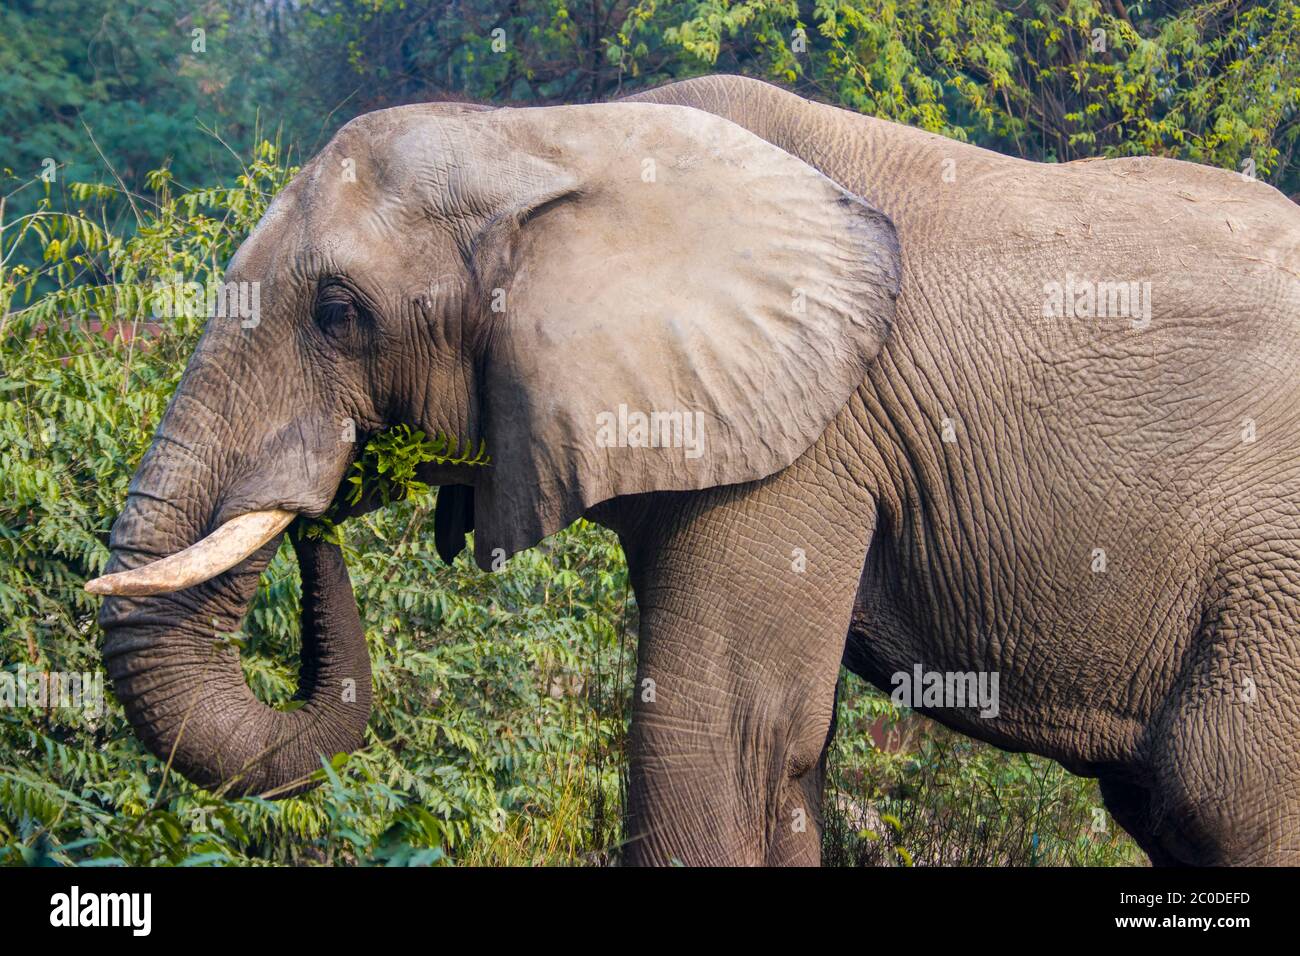 L'elefante africano sciankar mangia in cespuglio nel nuovo zoo di delhi, un elefante che è un dono dello Zimbabwe al governo indiano. Foto Stock